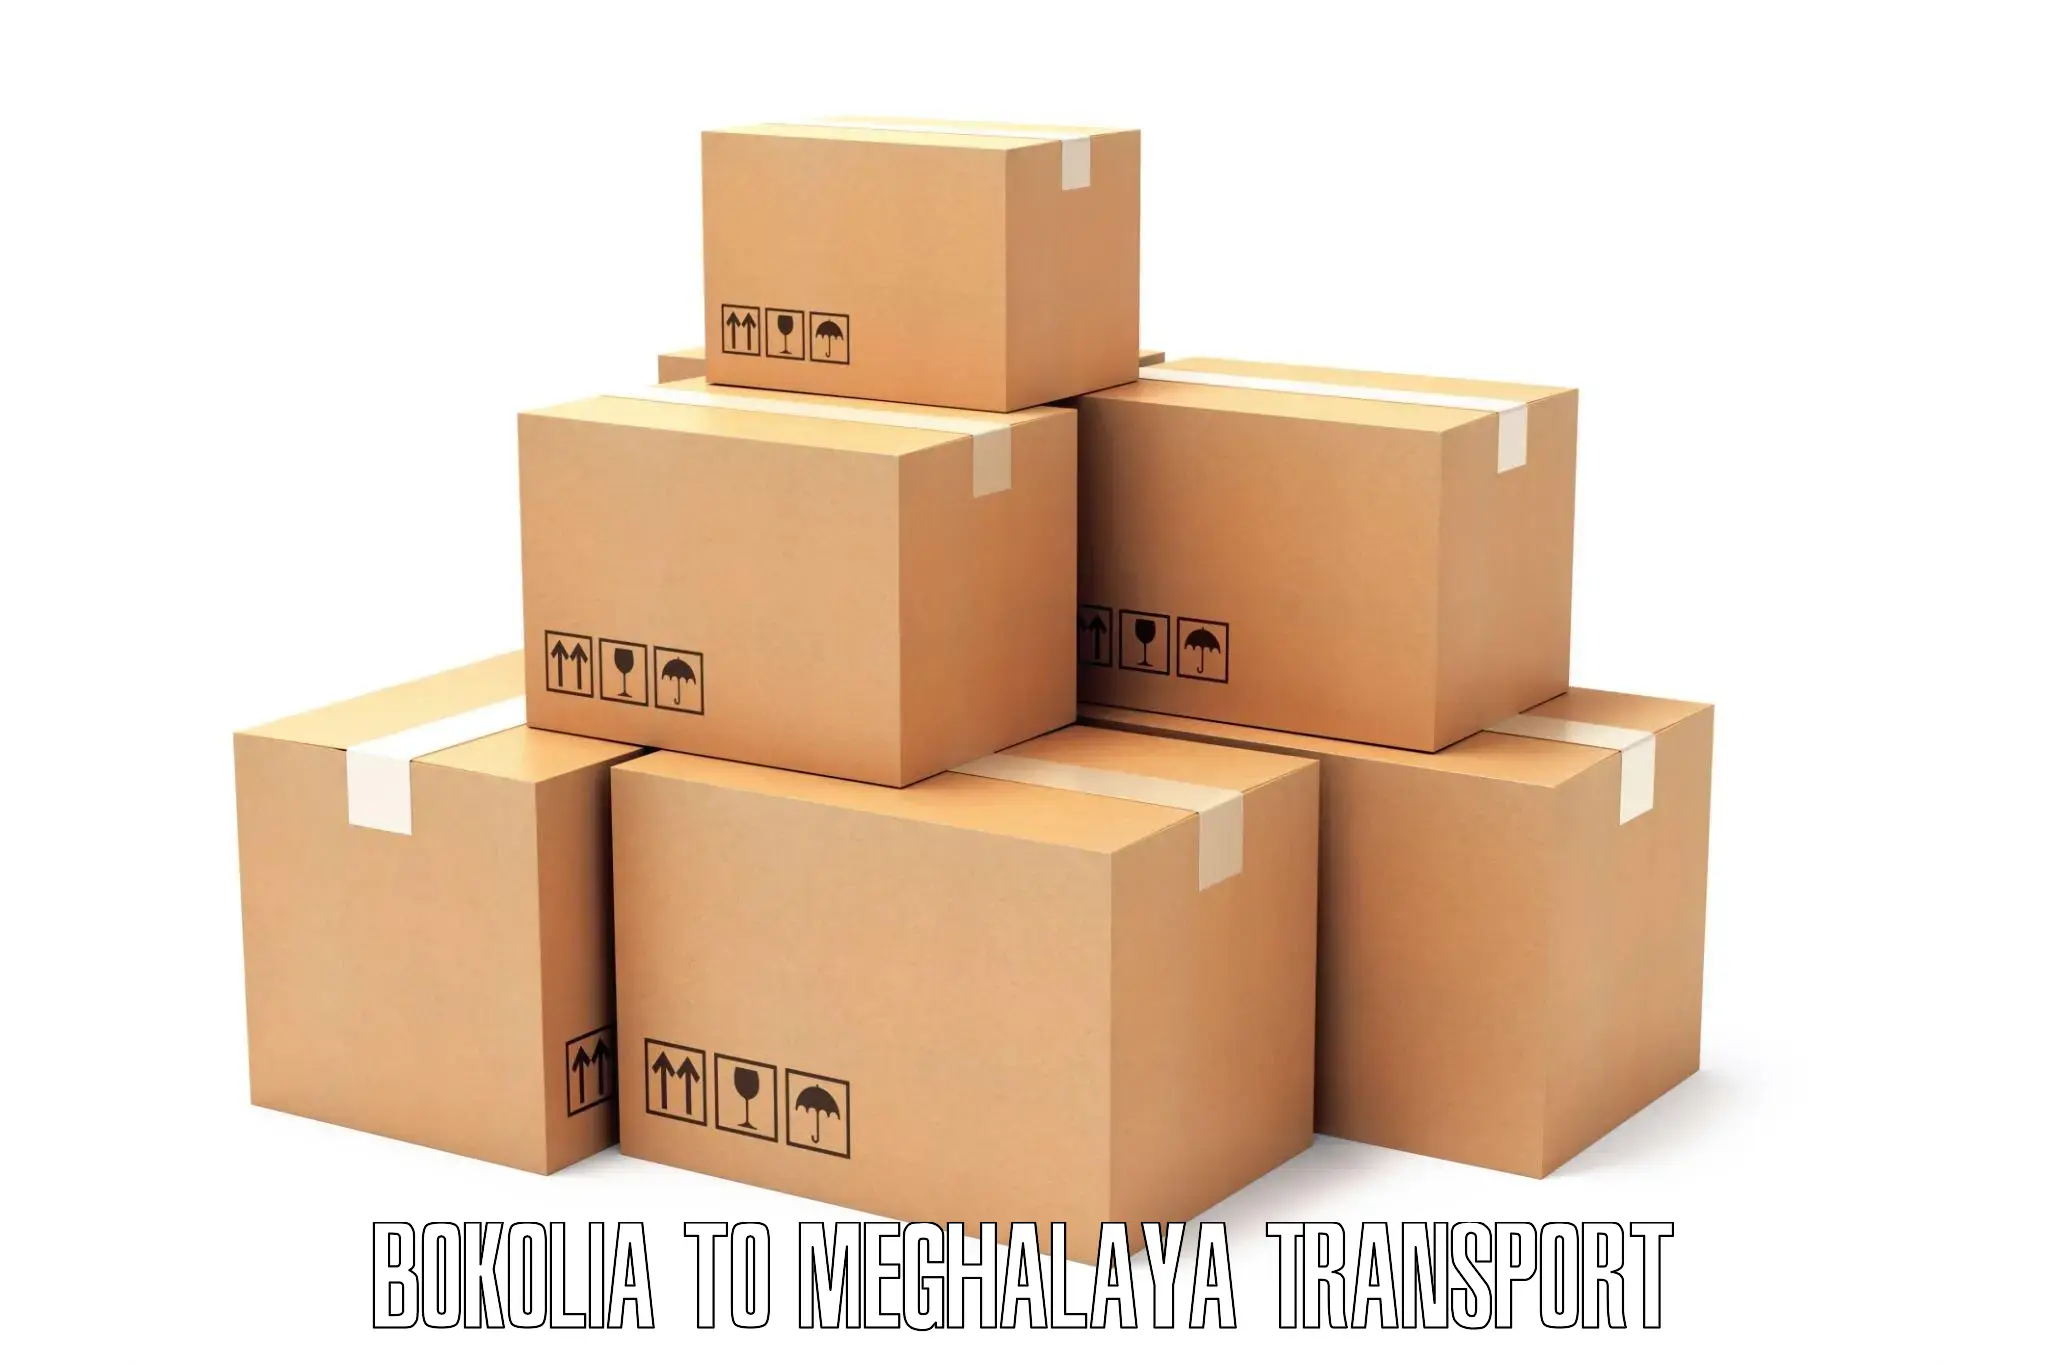 Transport in sharing Bokolia to Meghalaya